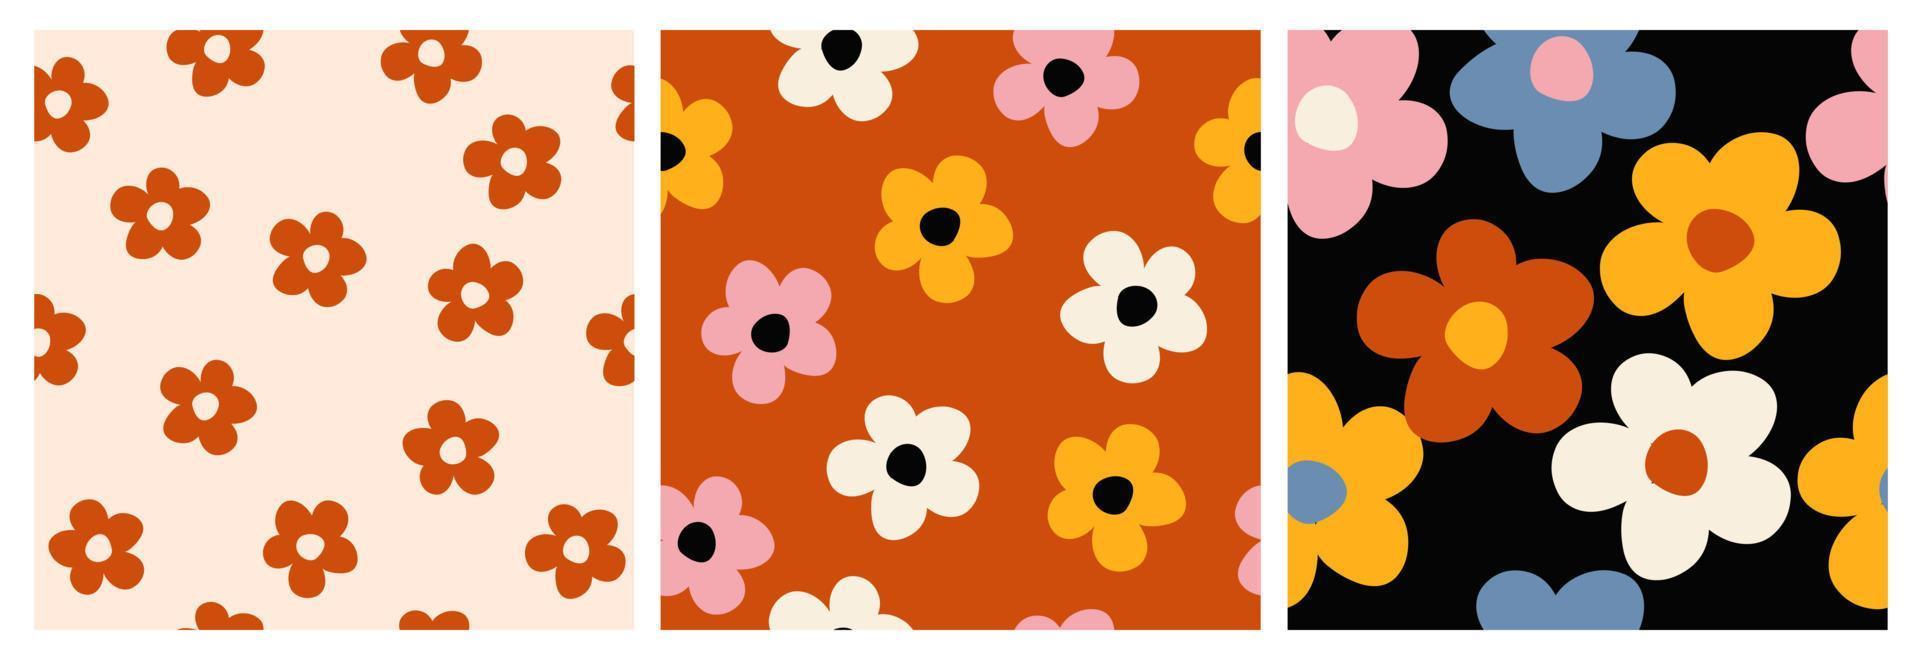 y2k Gänseblümchen Blumen nahtlos Muster im groovig retro funky Stil. einfach geformt Blumen Vektor Hintergrund. gemütlich Jahrgang Stoff drucken, Textil, Zuhause Deko.